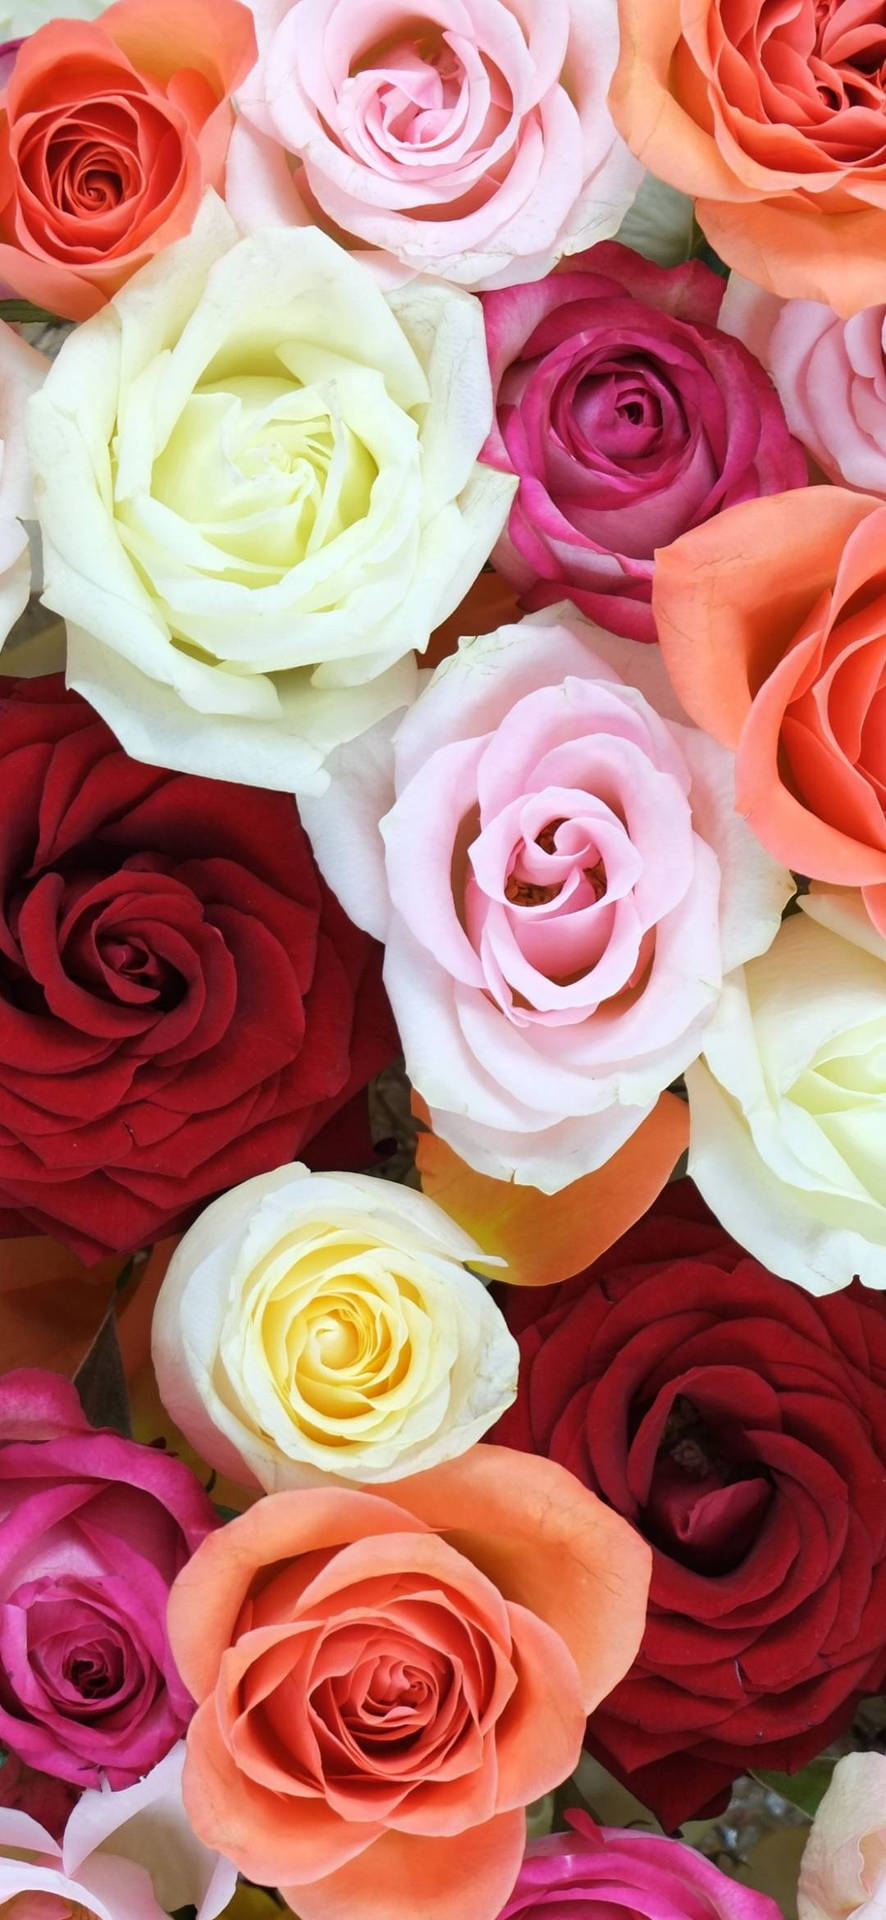 Diverse Palette Of Vibrant Roses For Flower Phone Wallpaper